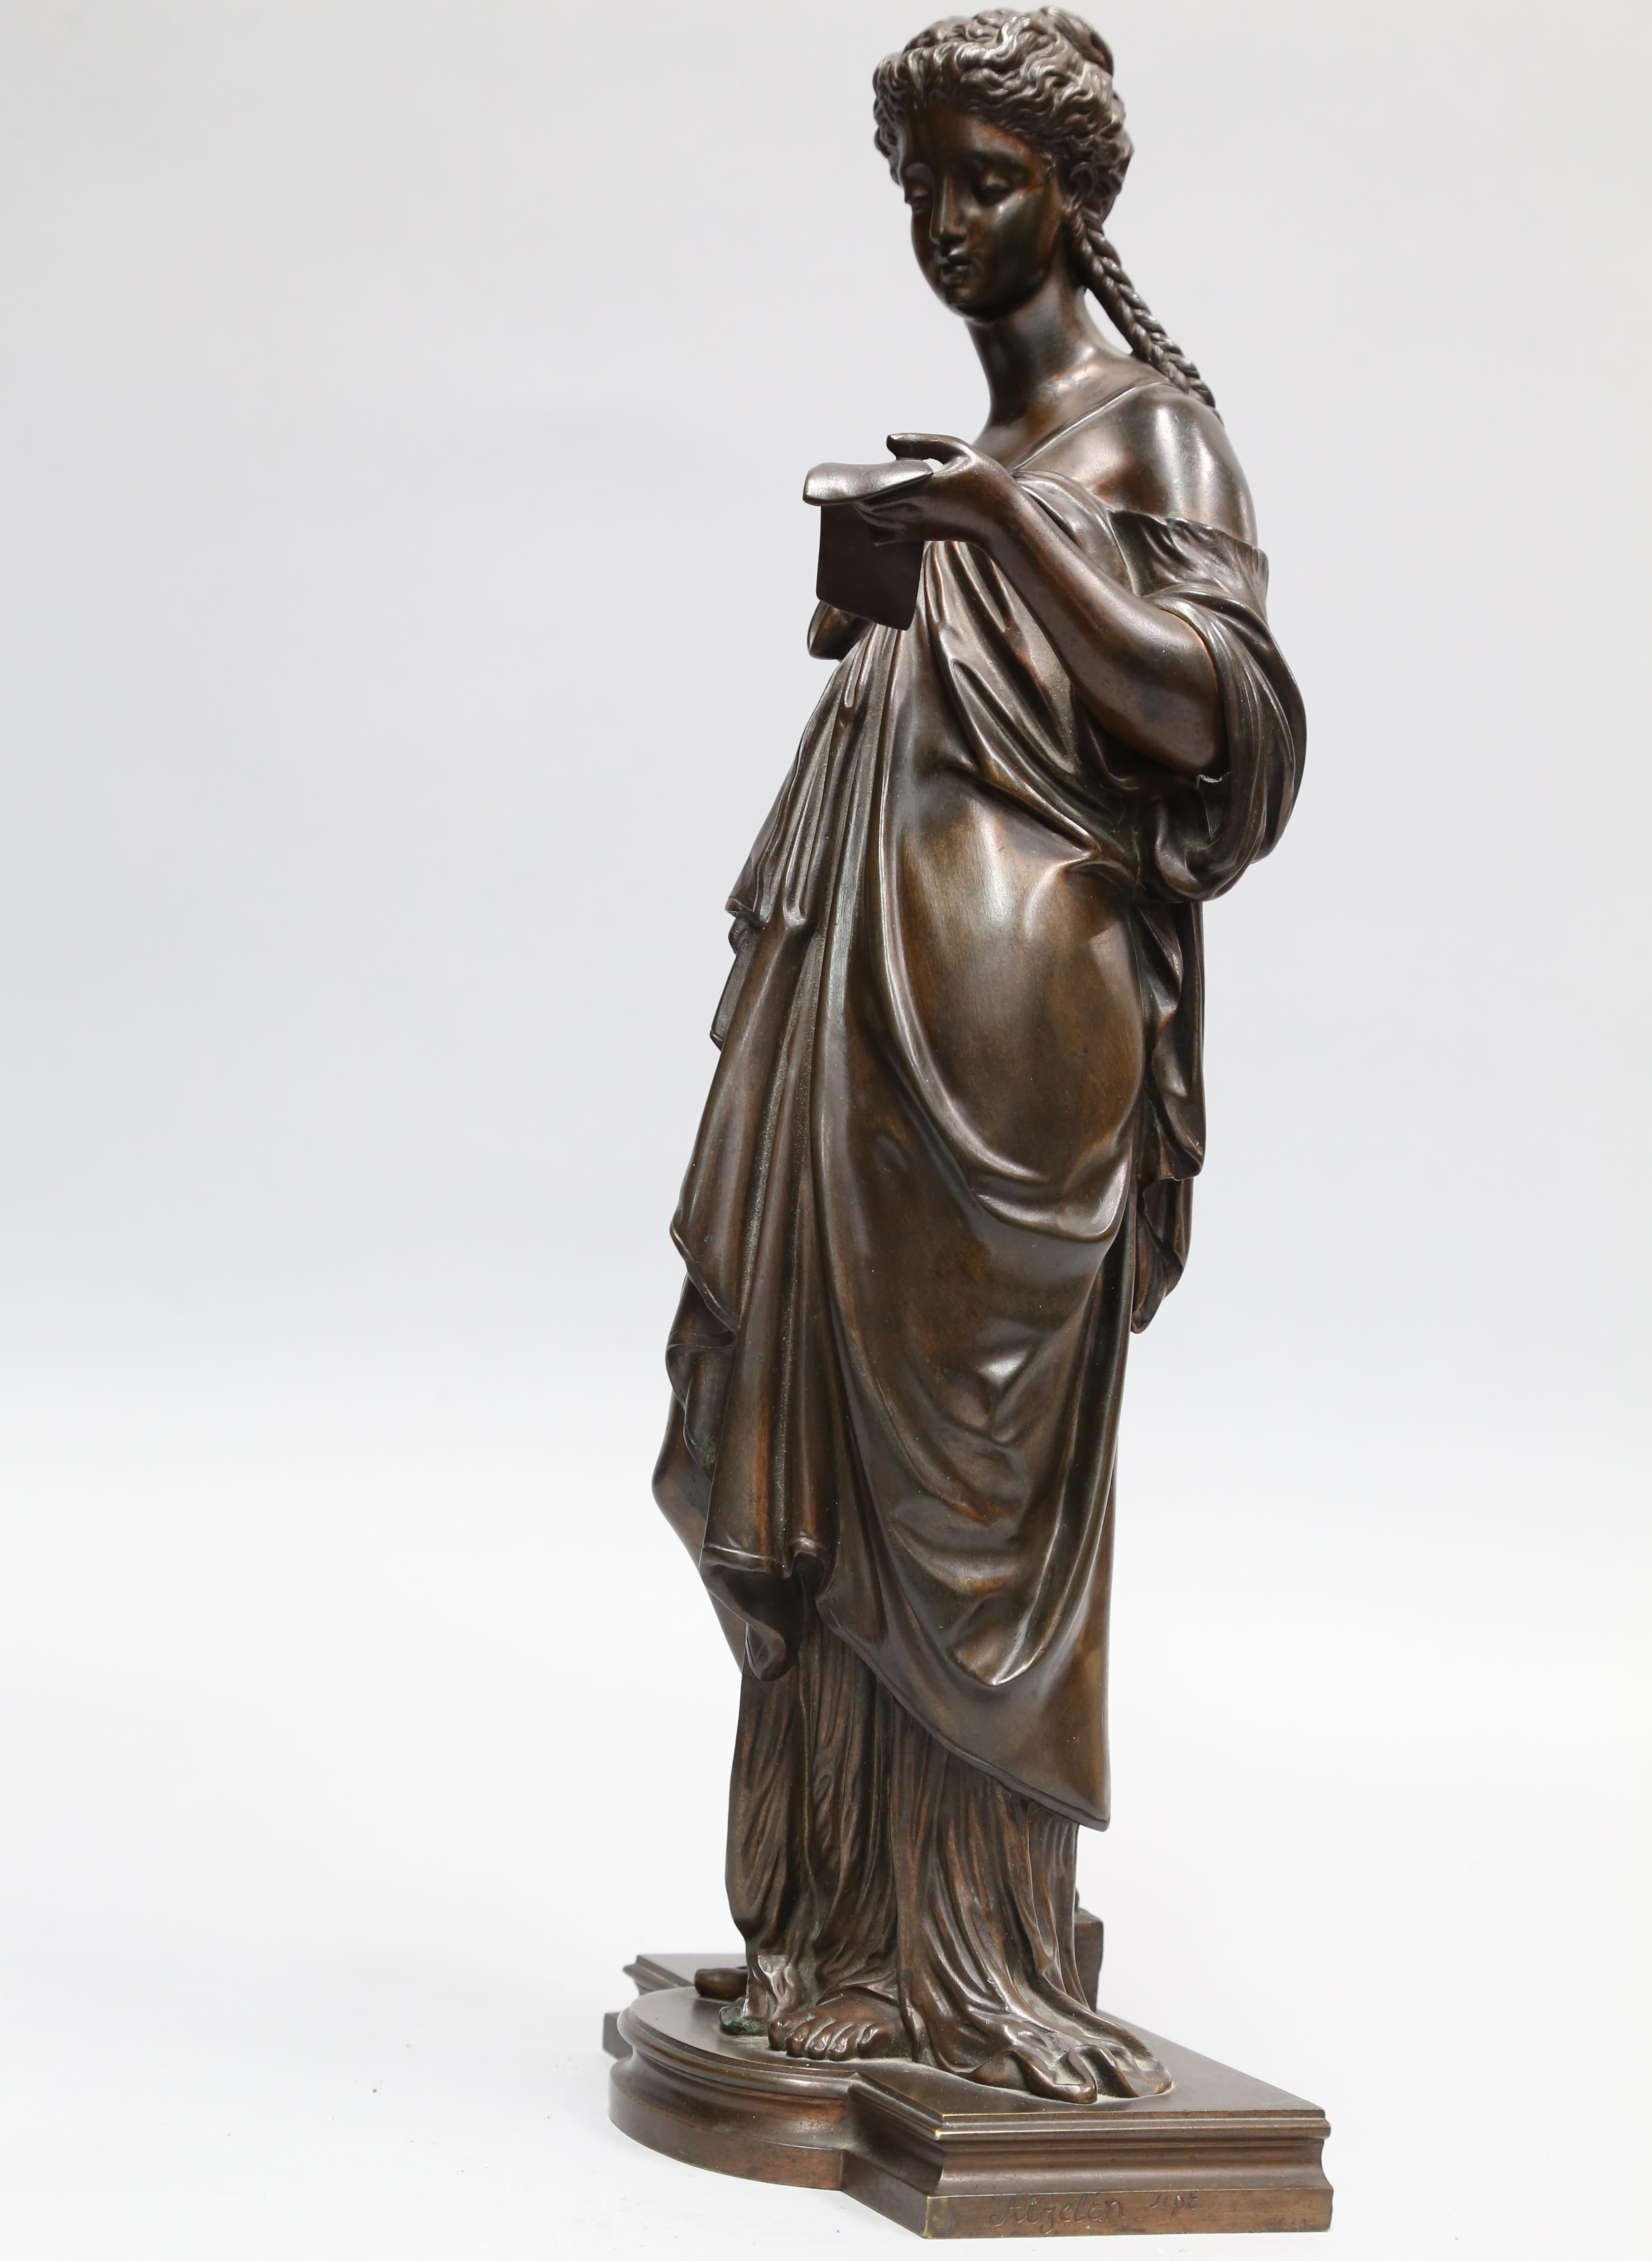 Exquisite Bronzeskulptur von Eugene Aizelin (Franzose 1821-1902) mit einer auffallend schönen Statue einer weiblichen Figur, die stehend einen Brief liest; auf Sockel gestellt. Abmessungen: 16.5